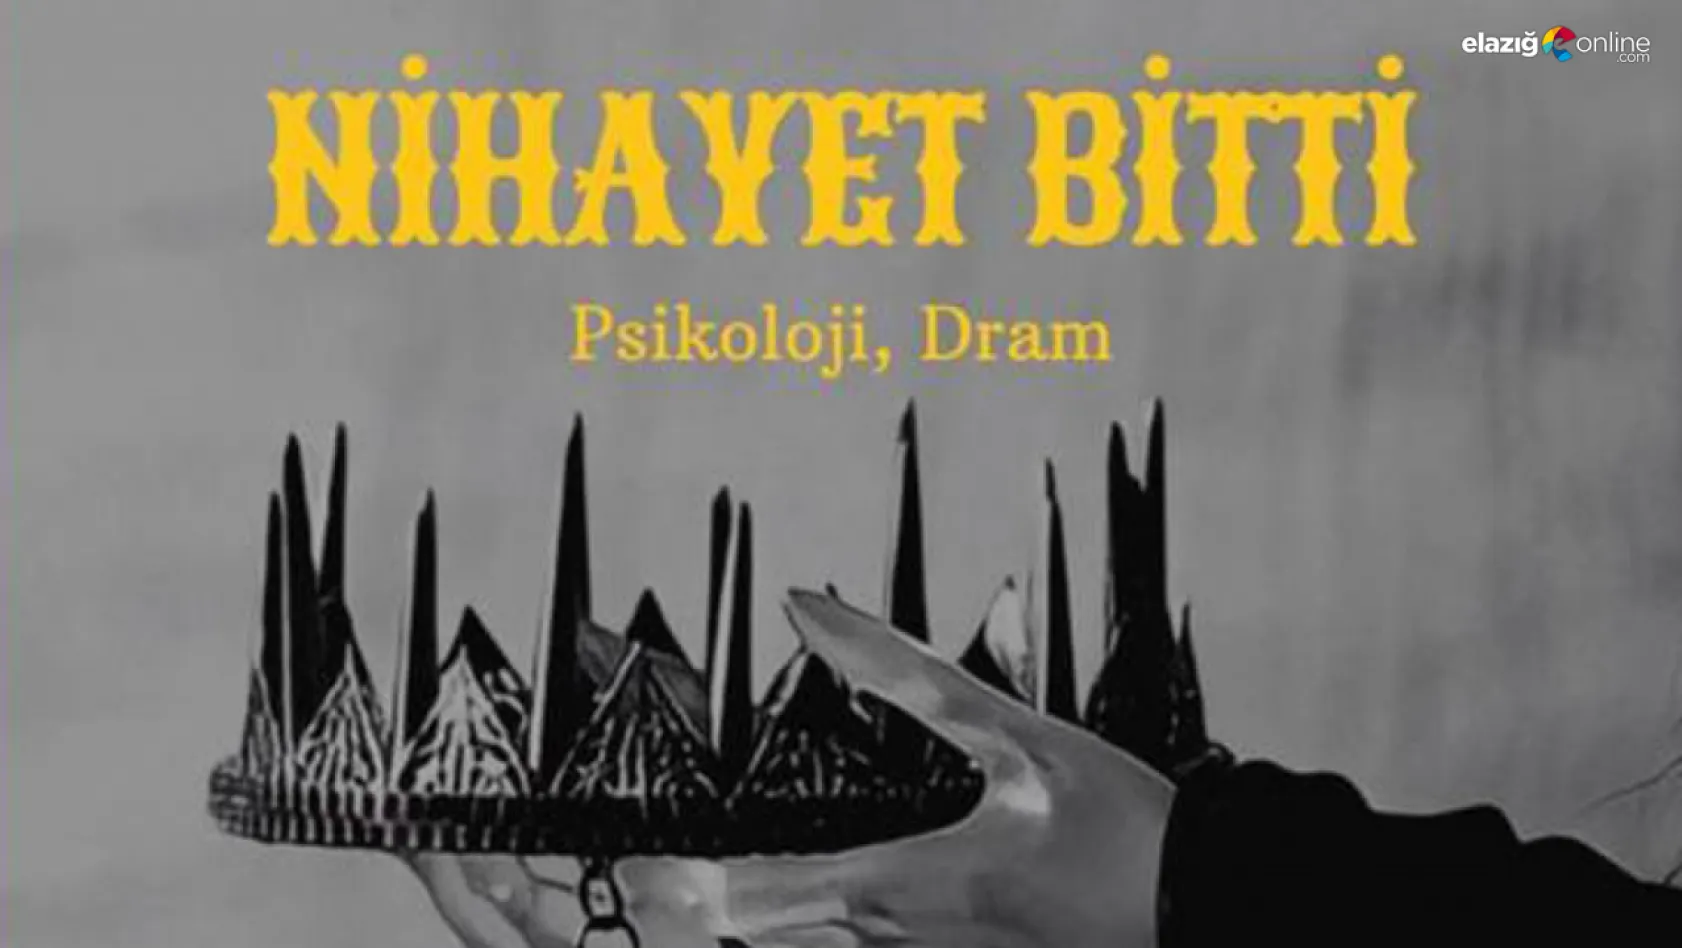 'Nihayet Bitti' tiyatro oyunu 10 Eylül'de seyircisiyle buluşacak